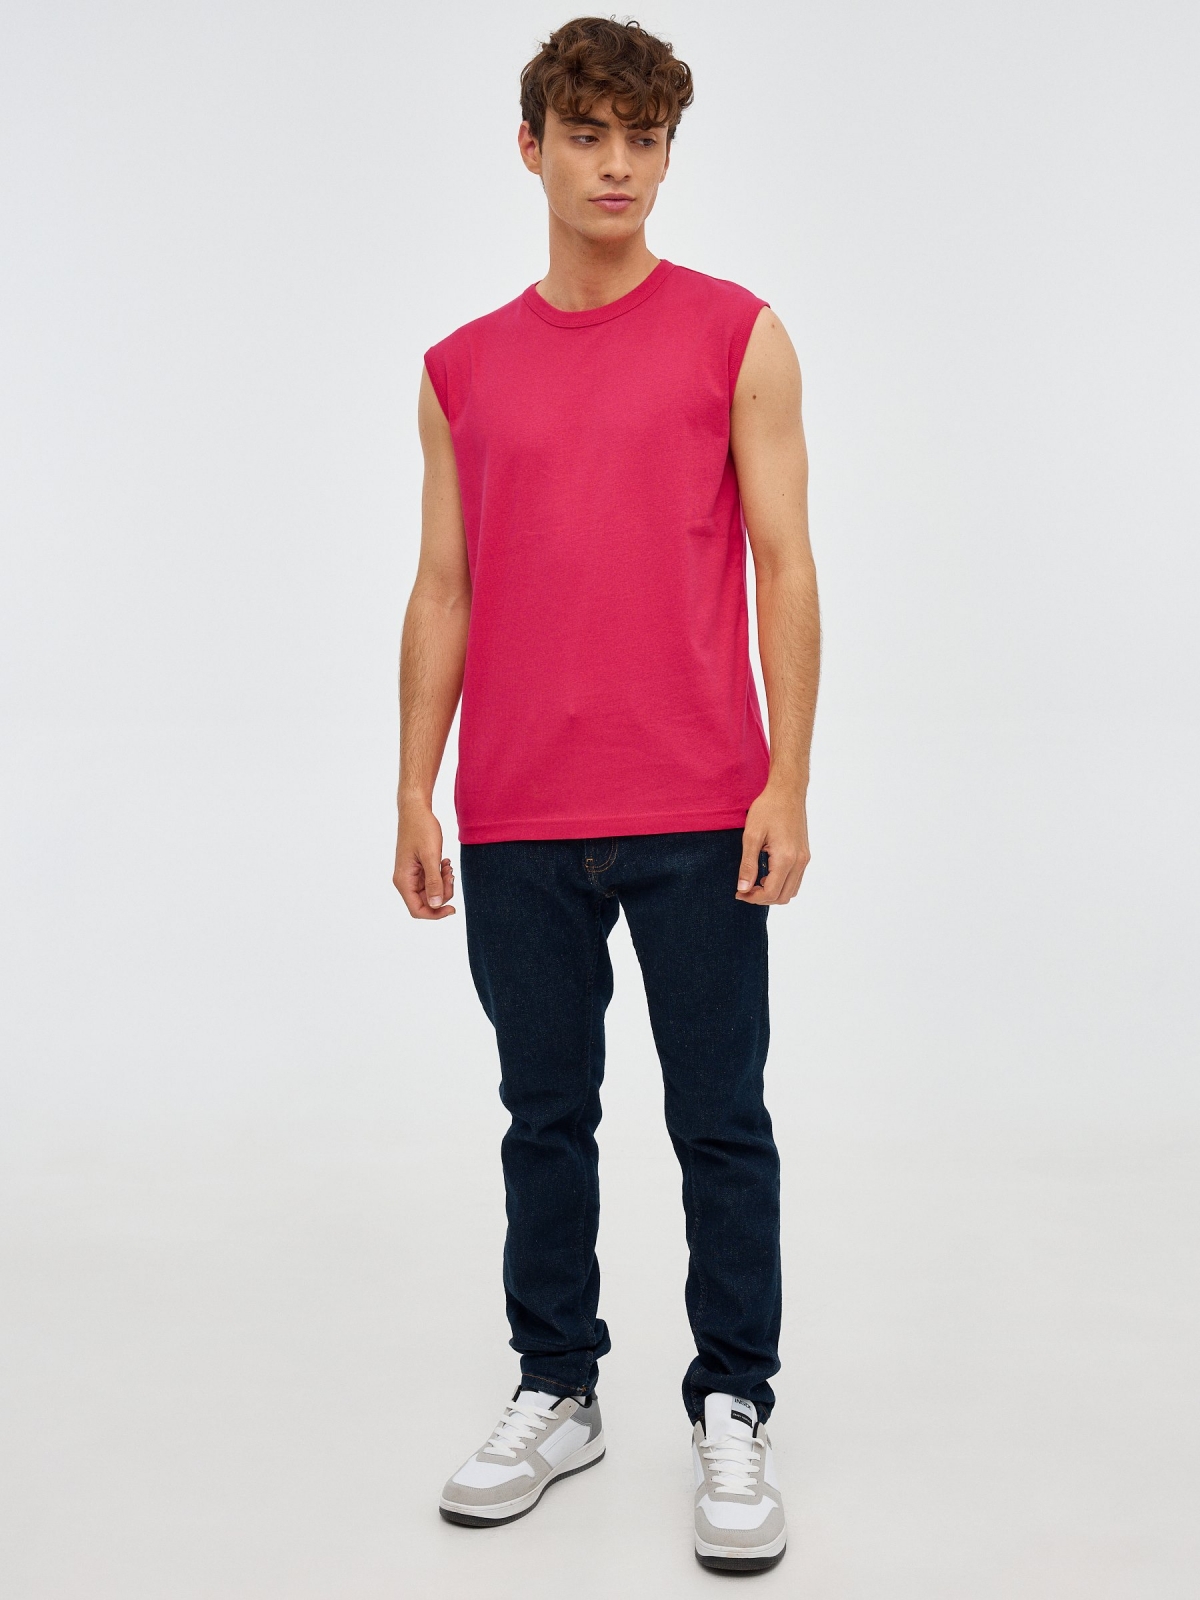 T-shirt básica sem mangas vermelho vista geral frontal